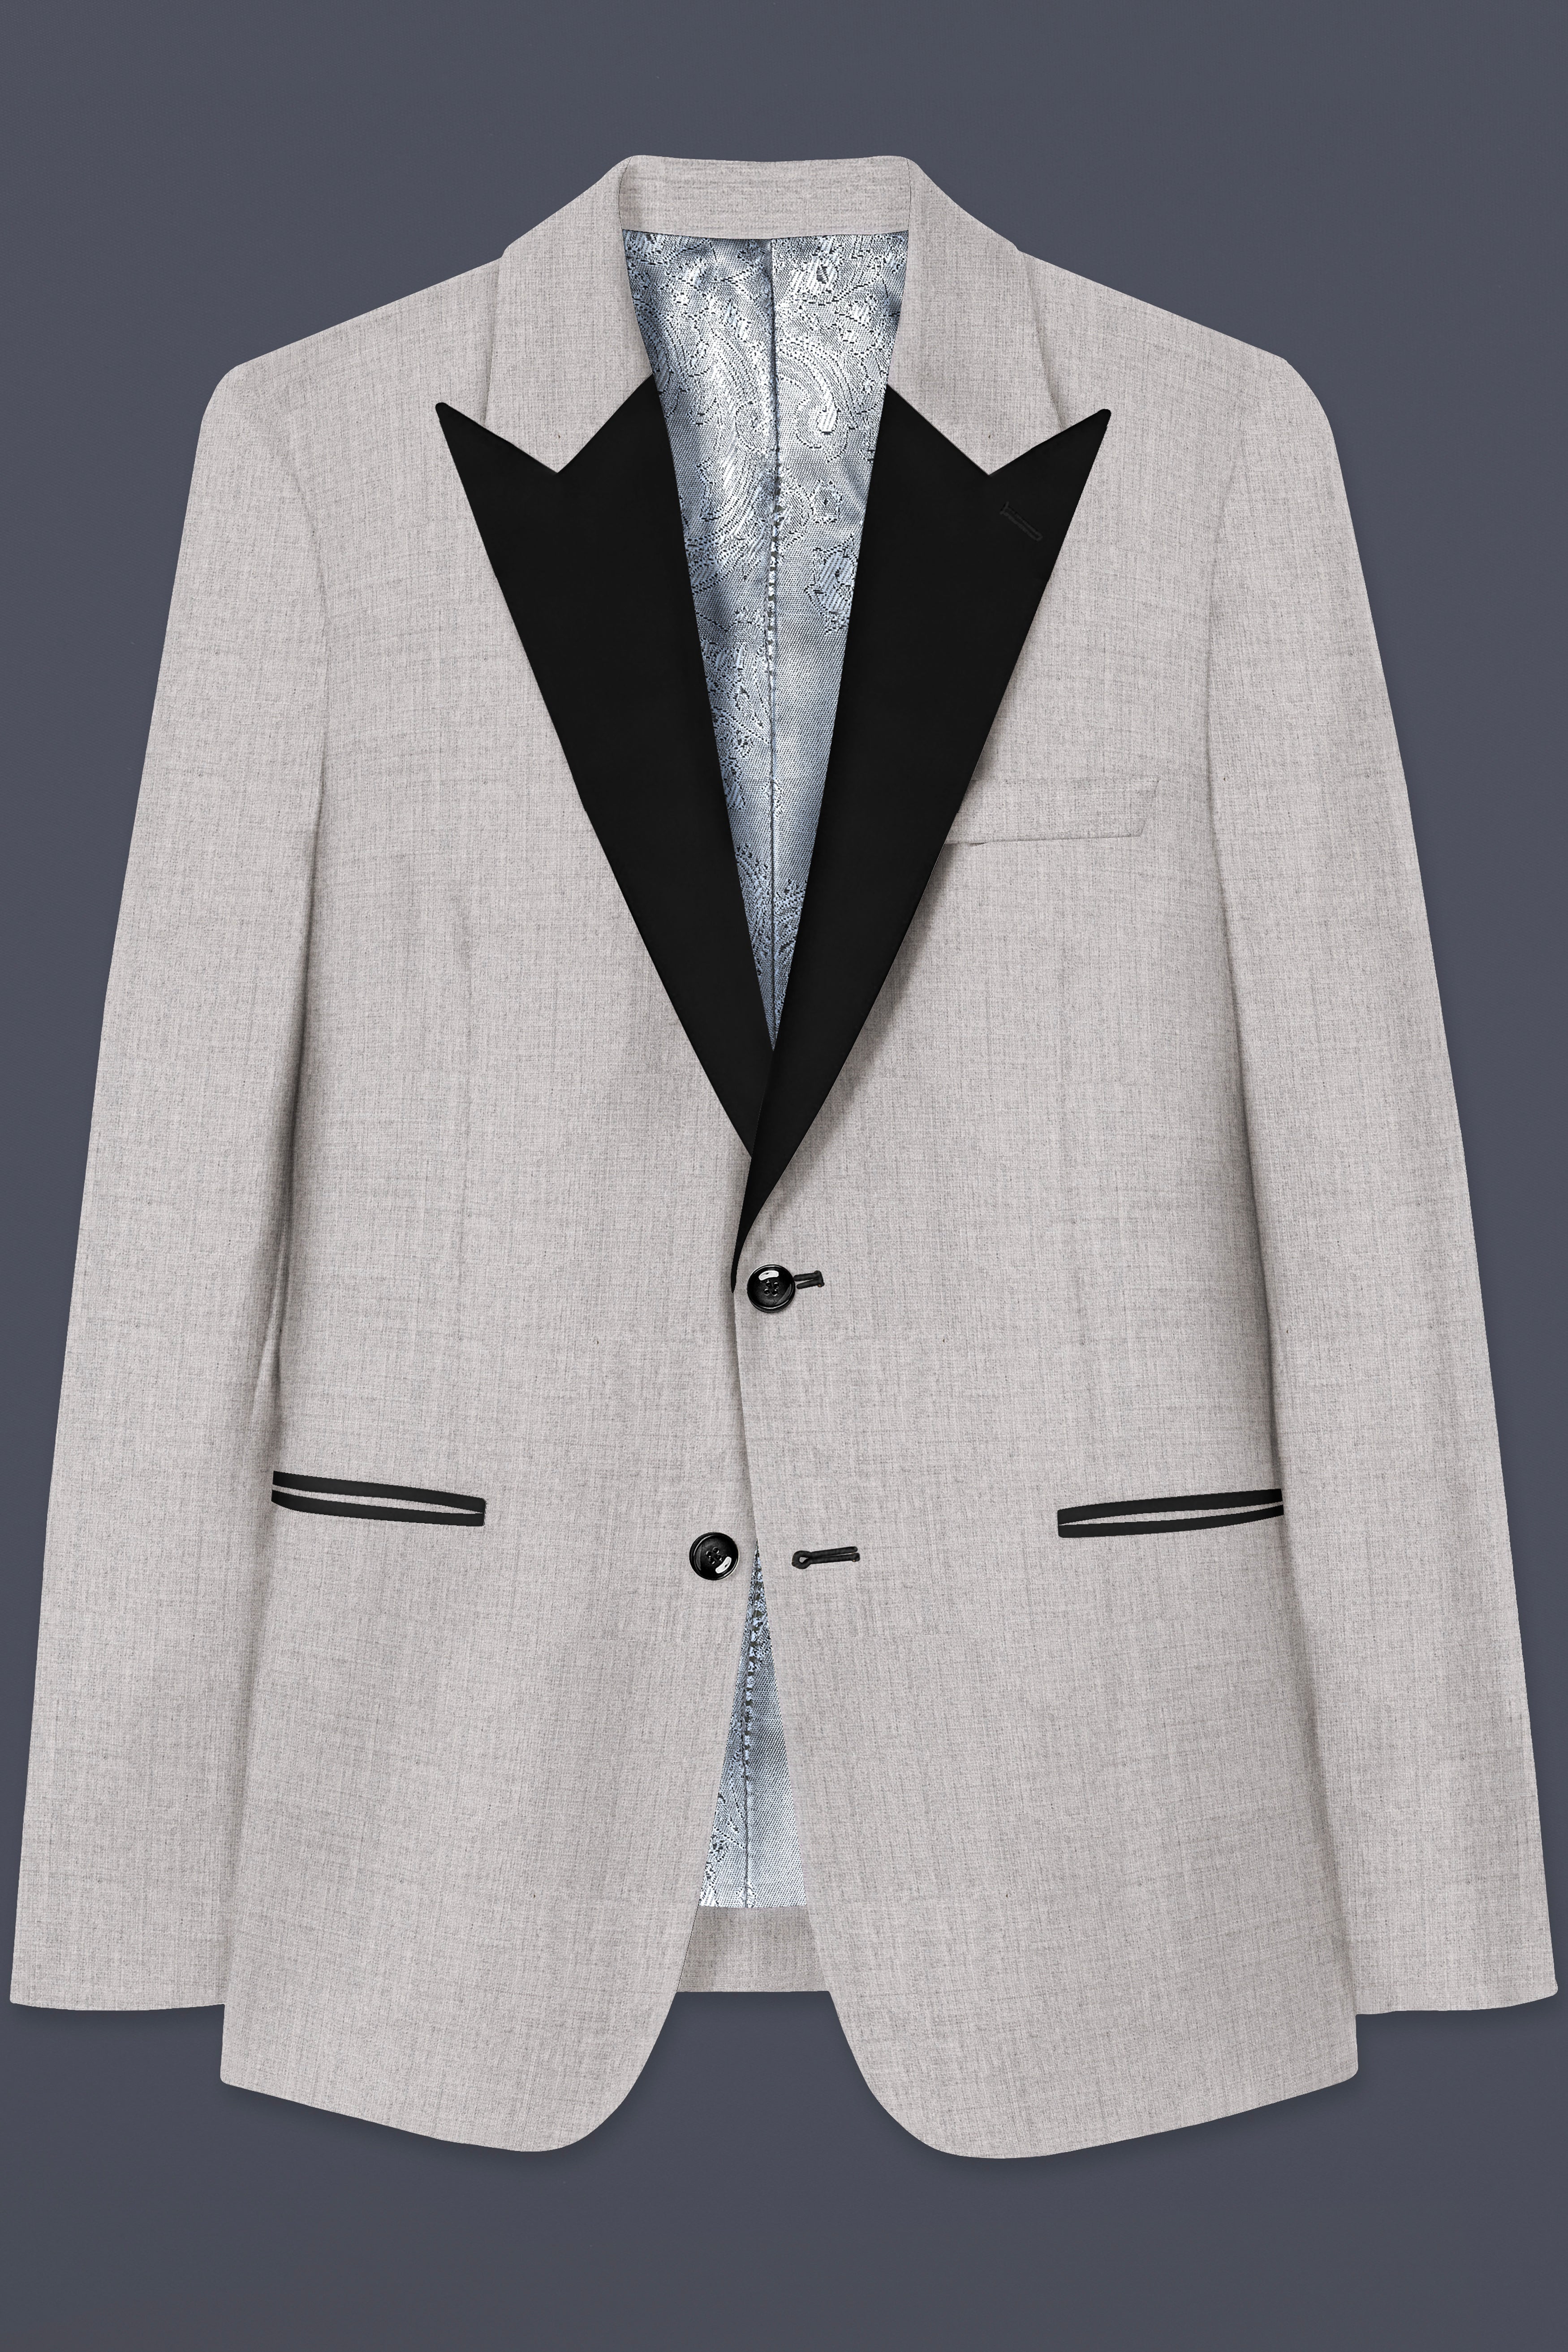 Martini Cream Textured Wool Rich Peak Collar Tuxedo Suit